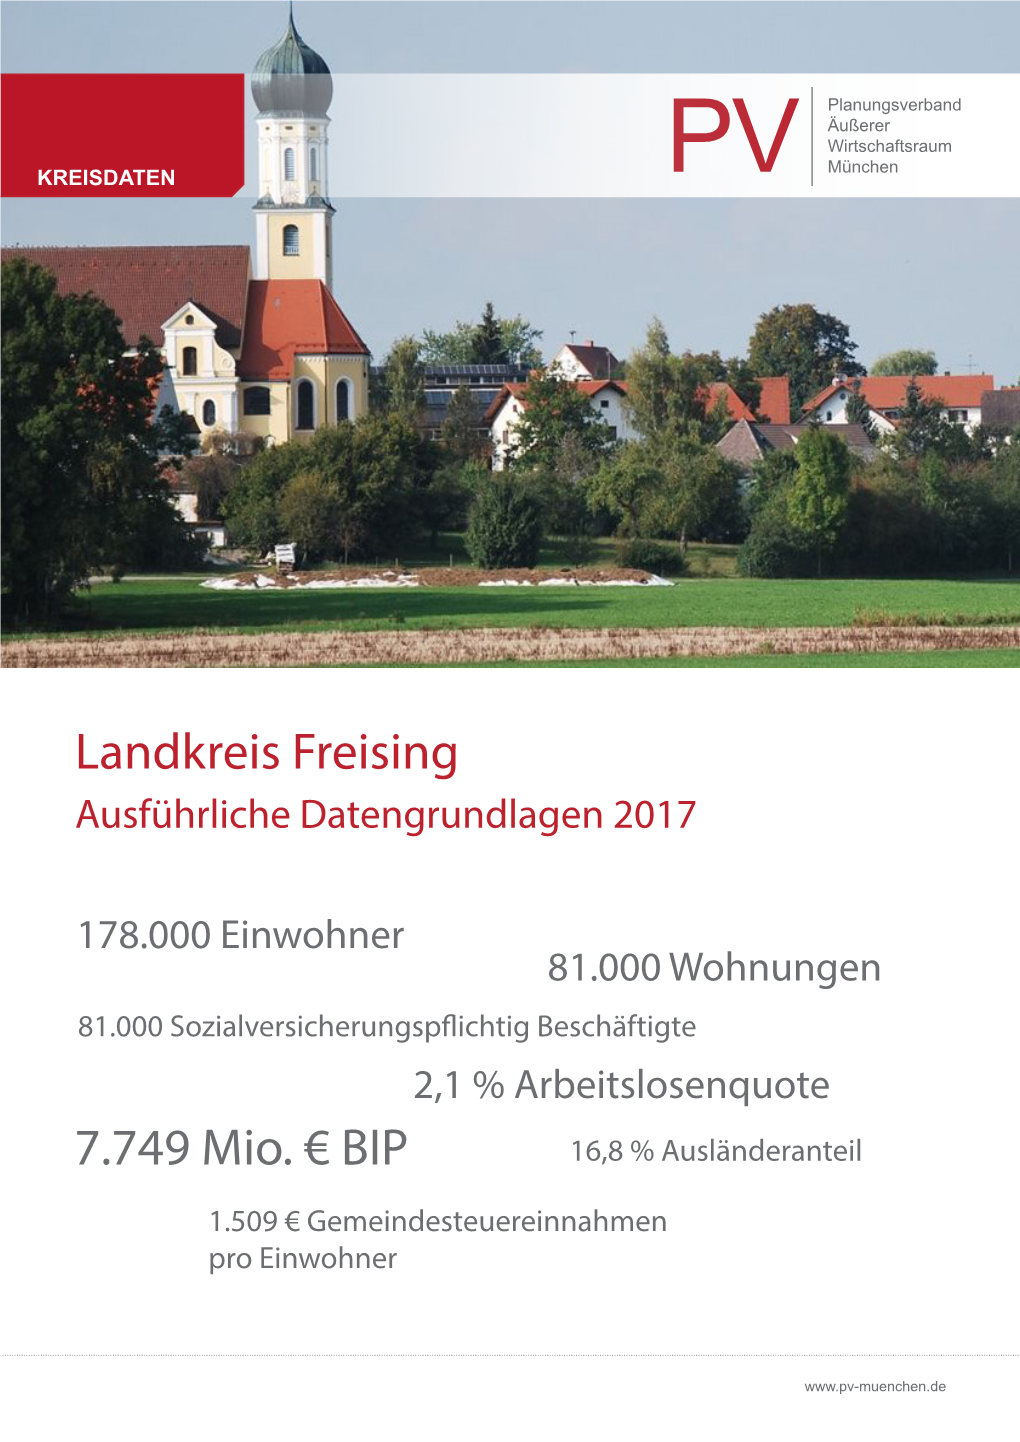 Landkreis Freising 7.749 Mio. €